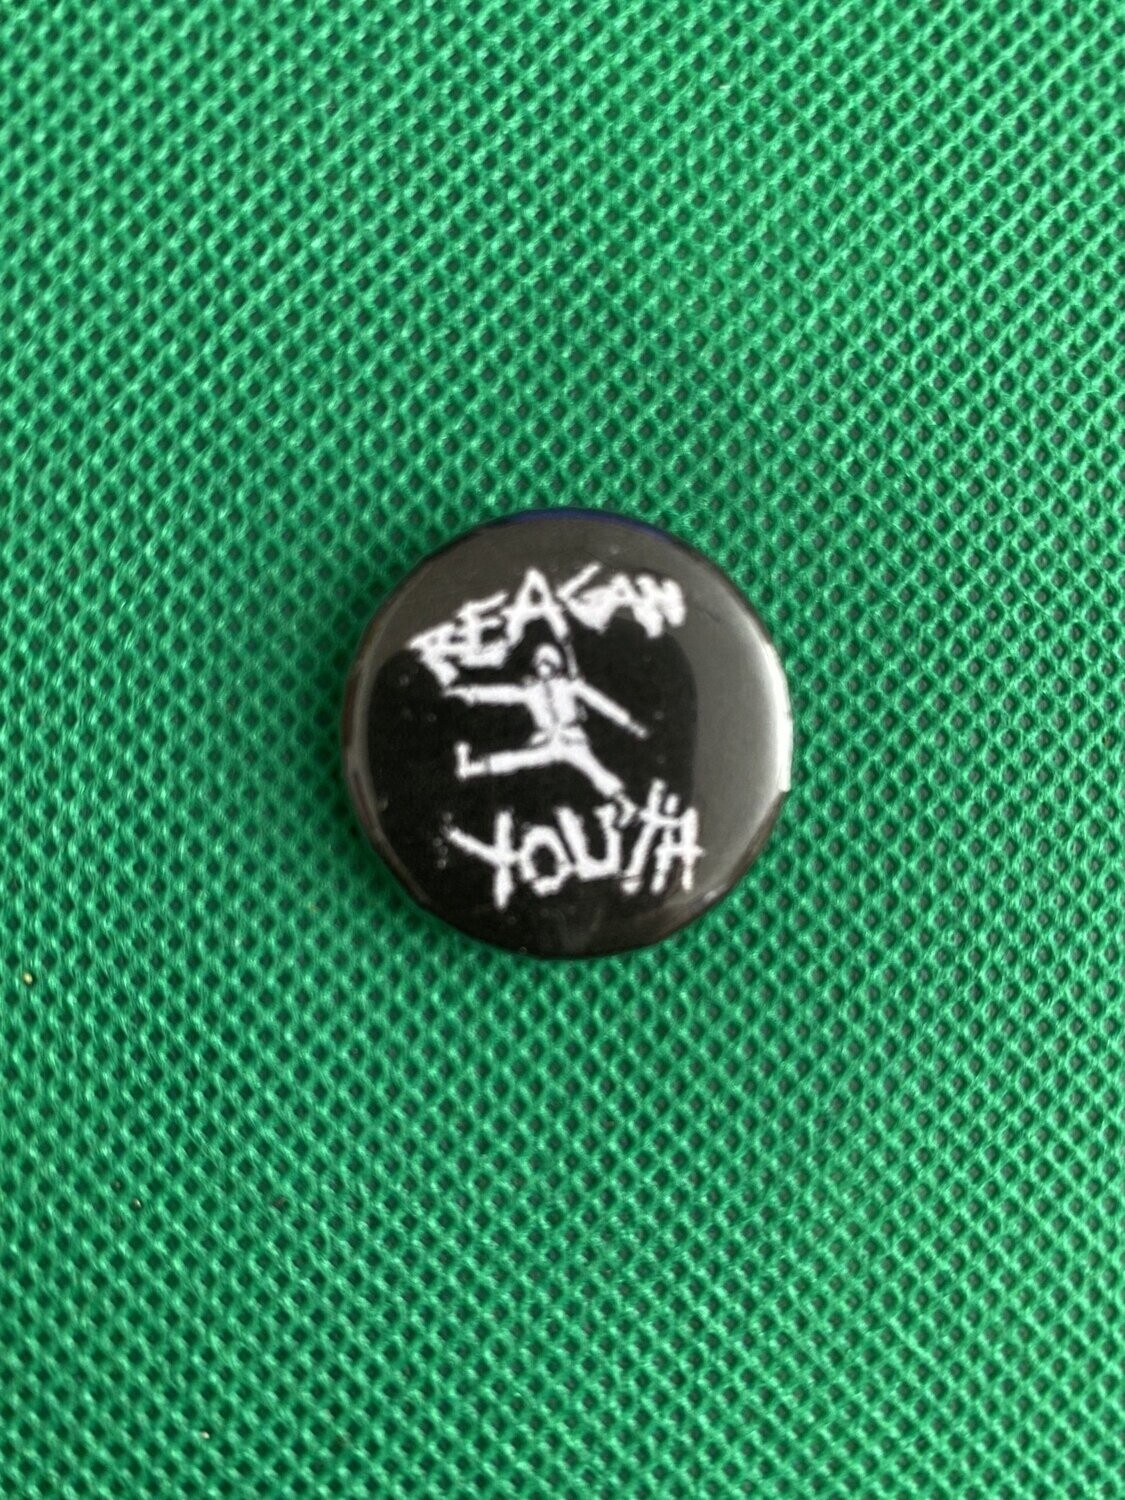 Reagan Youth Badge